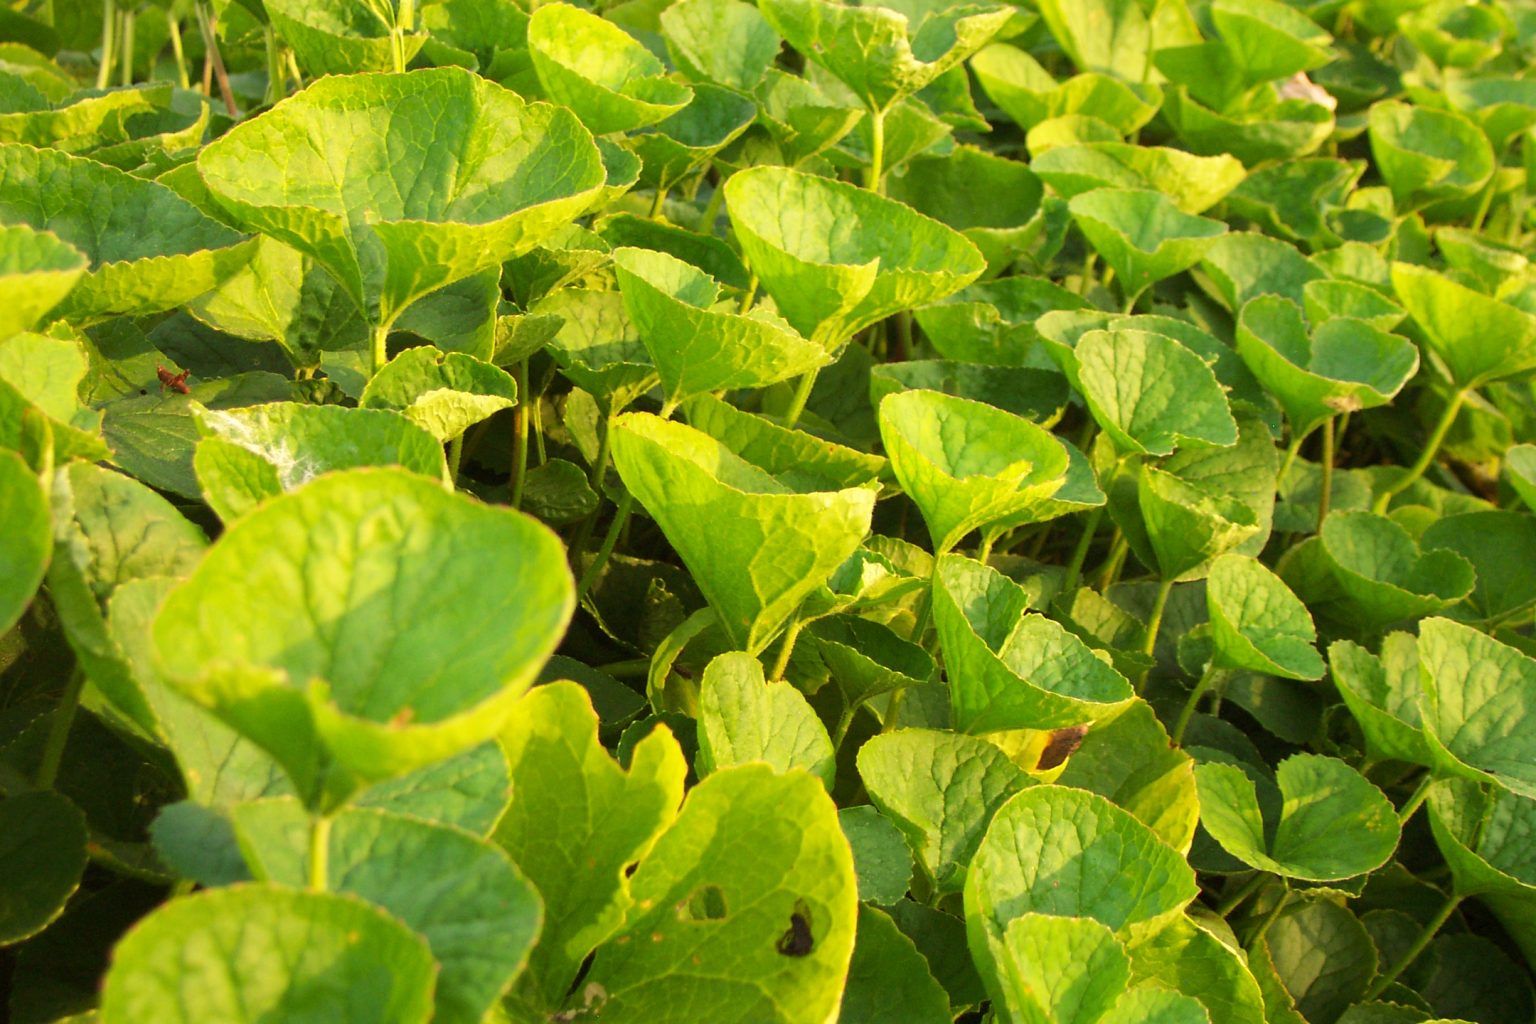 הידרוקוטיל (Centella asiatica)- אדפטוגן תוצרת הודו. באדיבות פרץ גן, על-עלים: מרכז לגידול, עיבוד, יבוא ושיווק של צמחי מרפא ותבלינים http://www.al-alim.co.il/